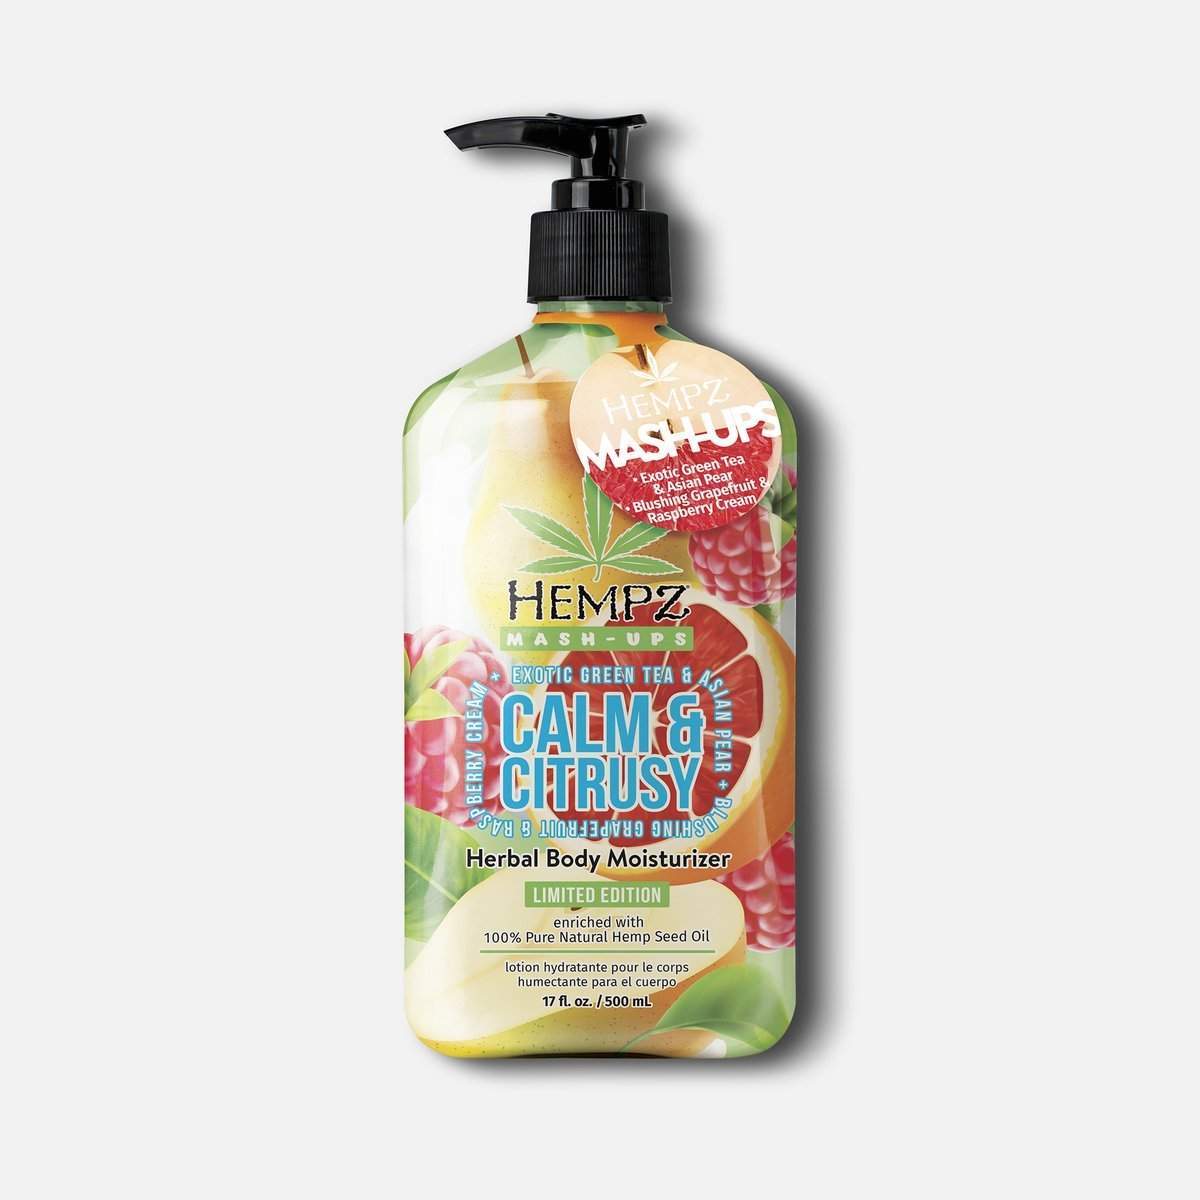 Hempz Mash-Ups Calm & Citrusy Herbal Body Moisturizer 17 fl oz.-Hempz-BB_Lotion,BB_Moisturizers,Brand_Hempz,Collection_Bath and Body,Hempz_Body Moisturizers